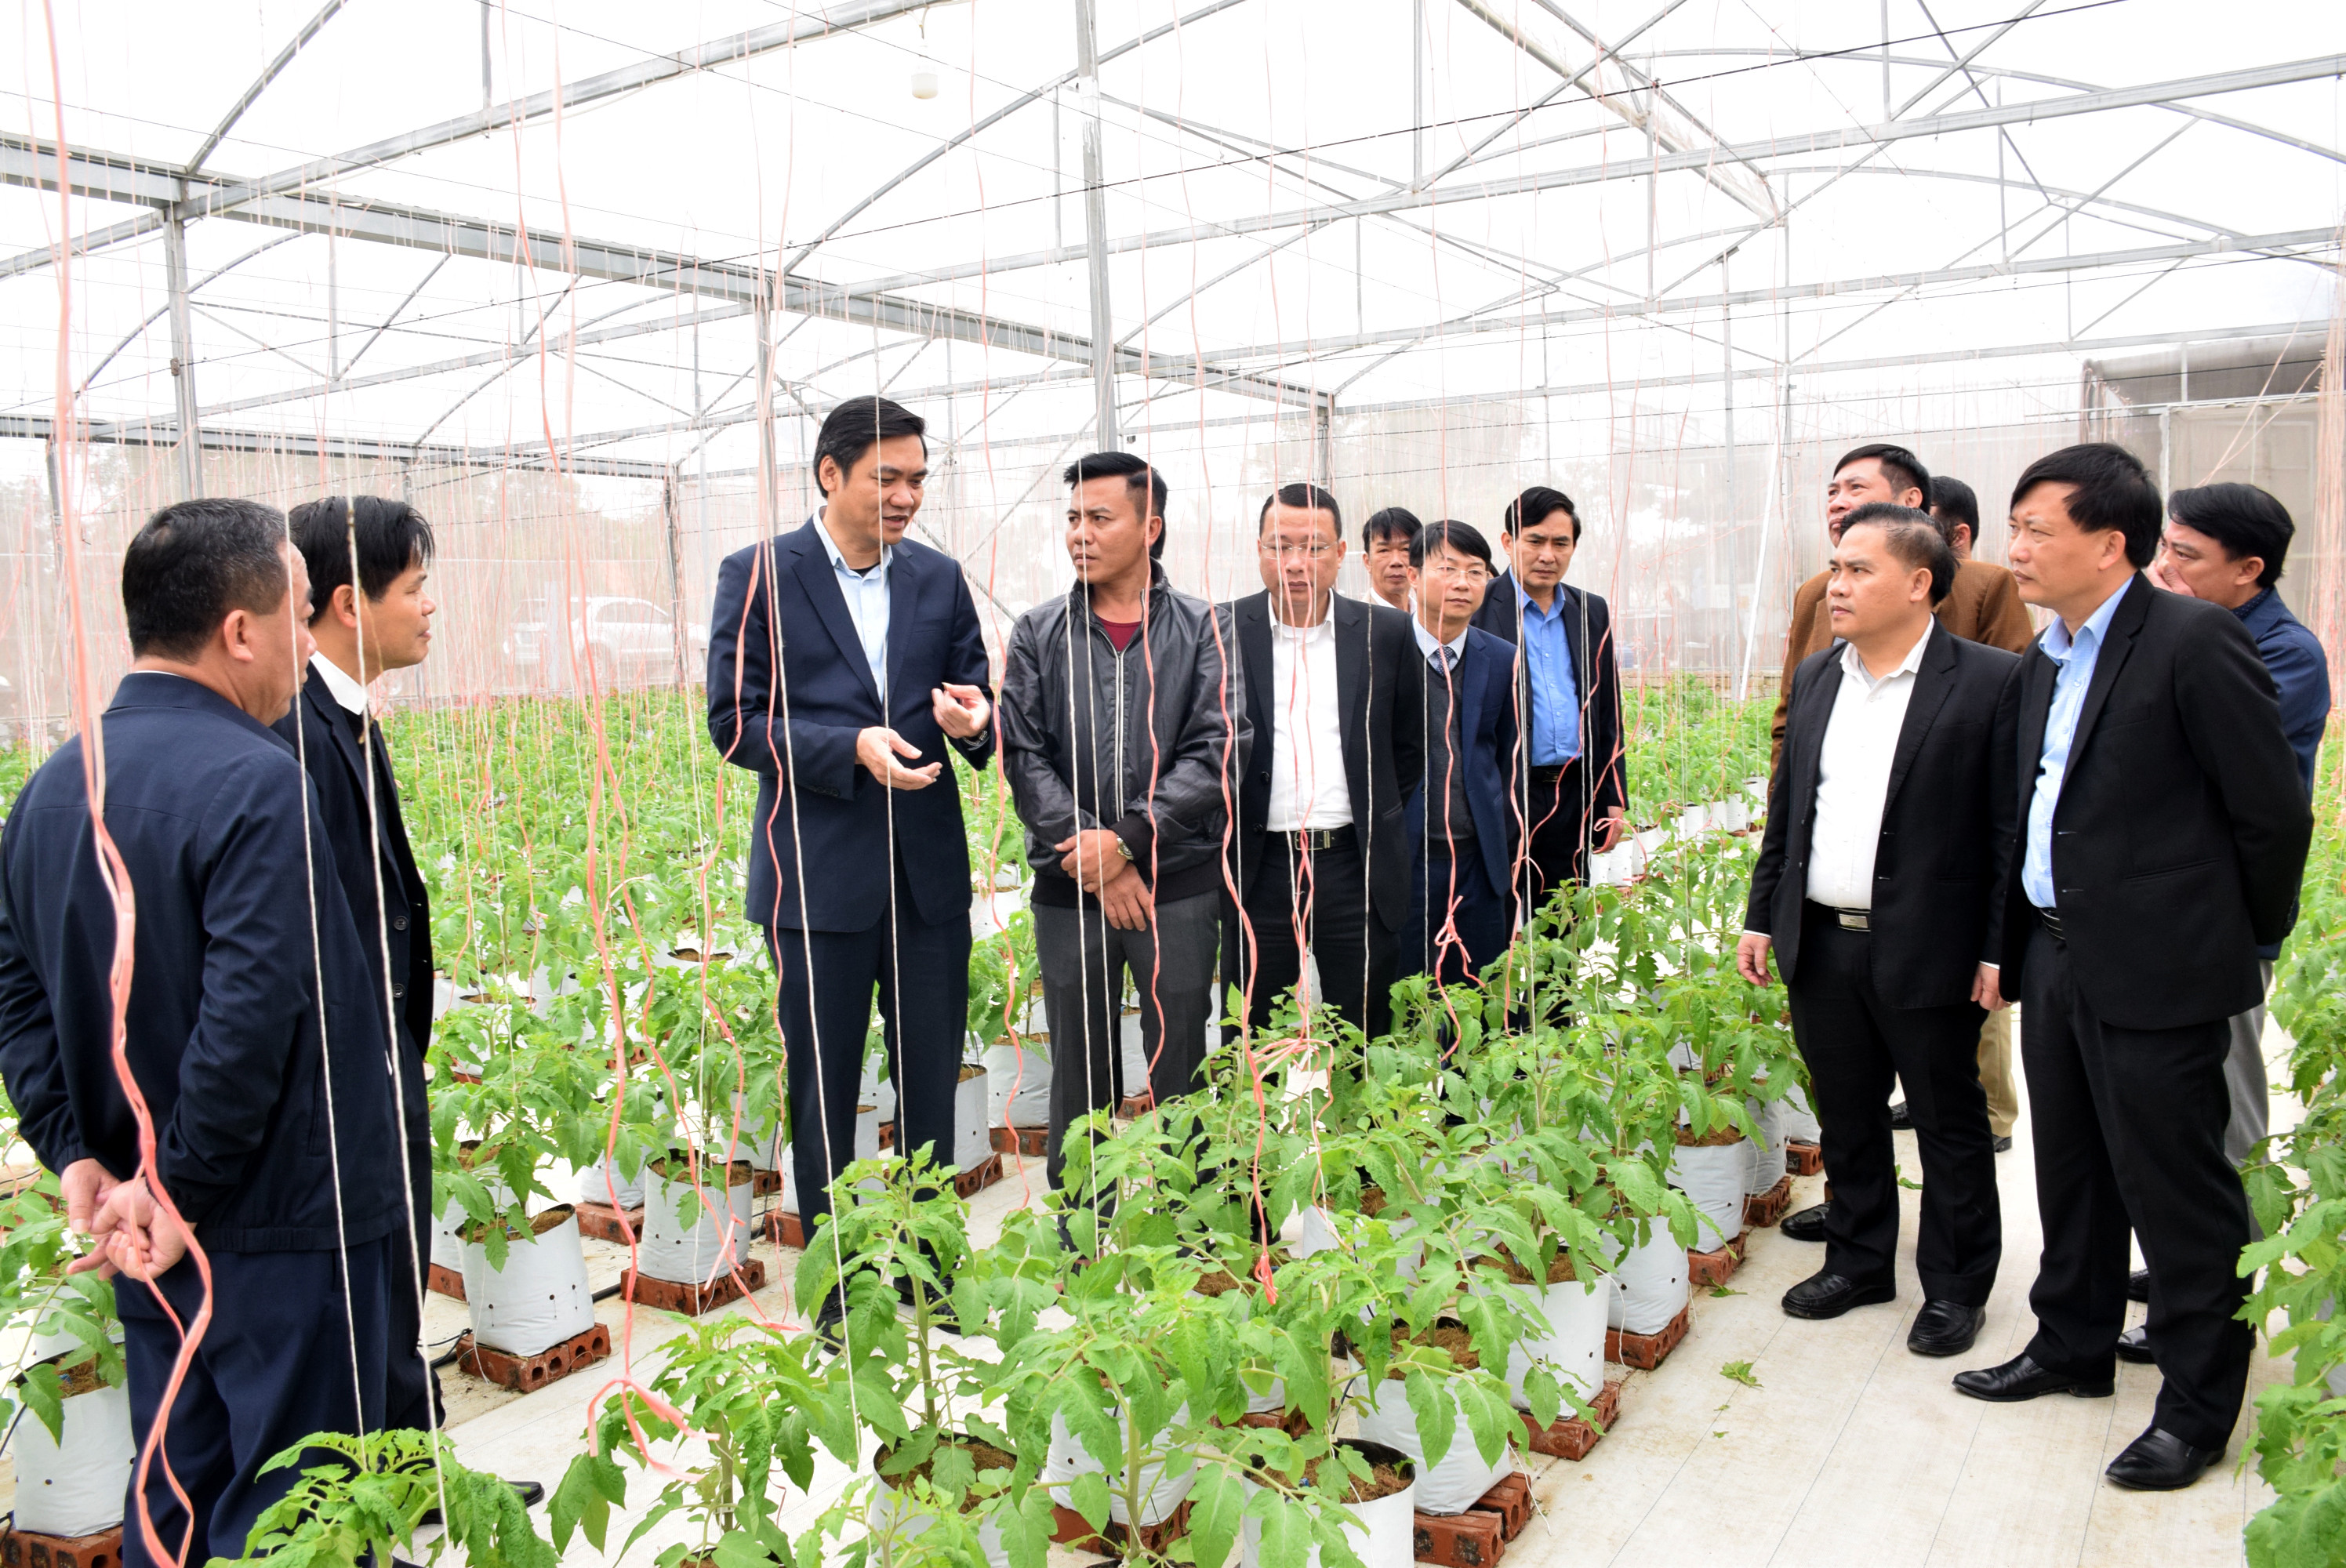 Đoàn tham quan mô hình sản xuất nông nghiệp trong nhà màng trên địa bàn xã Khánh Hợp. Ảnh: Xuân Hoàng